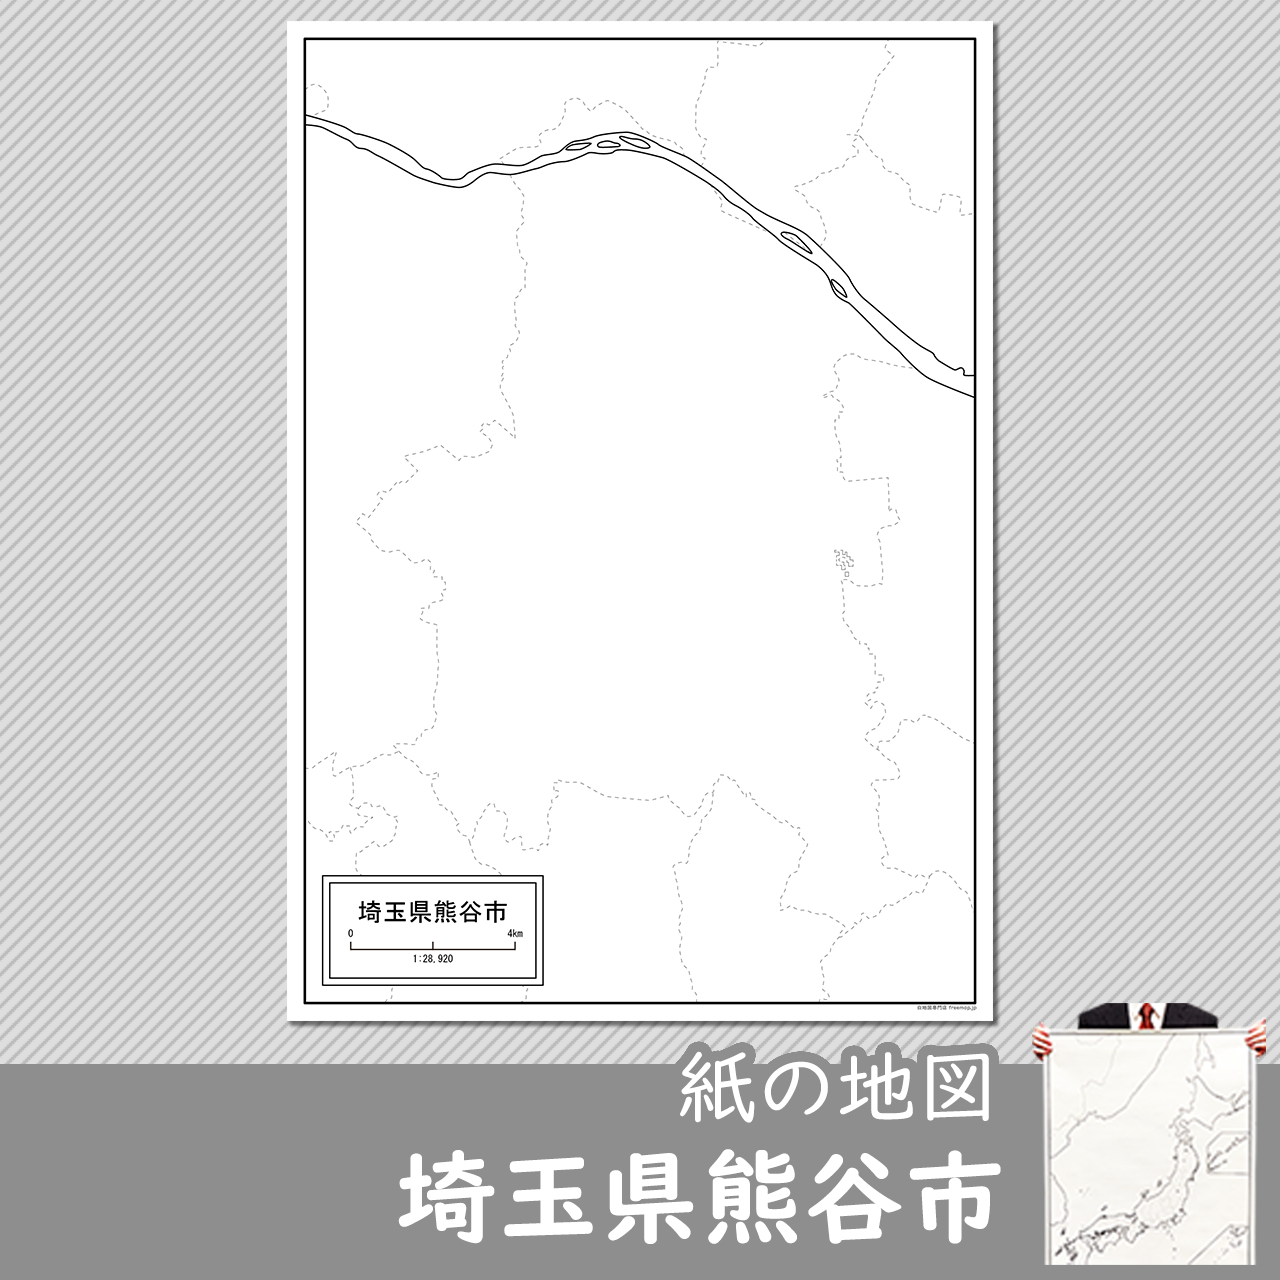 熊谷市の紙の白地図のサムネイル